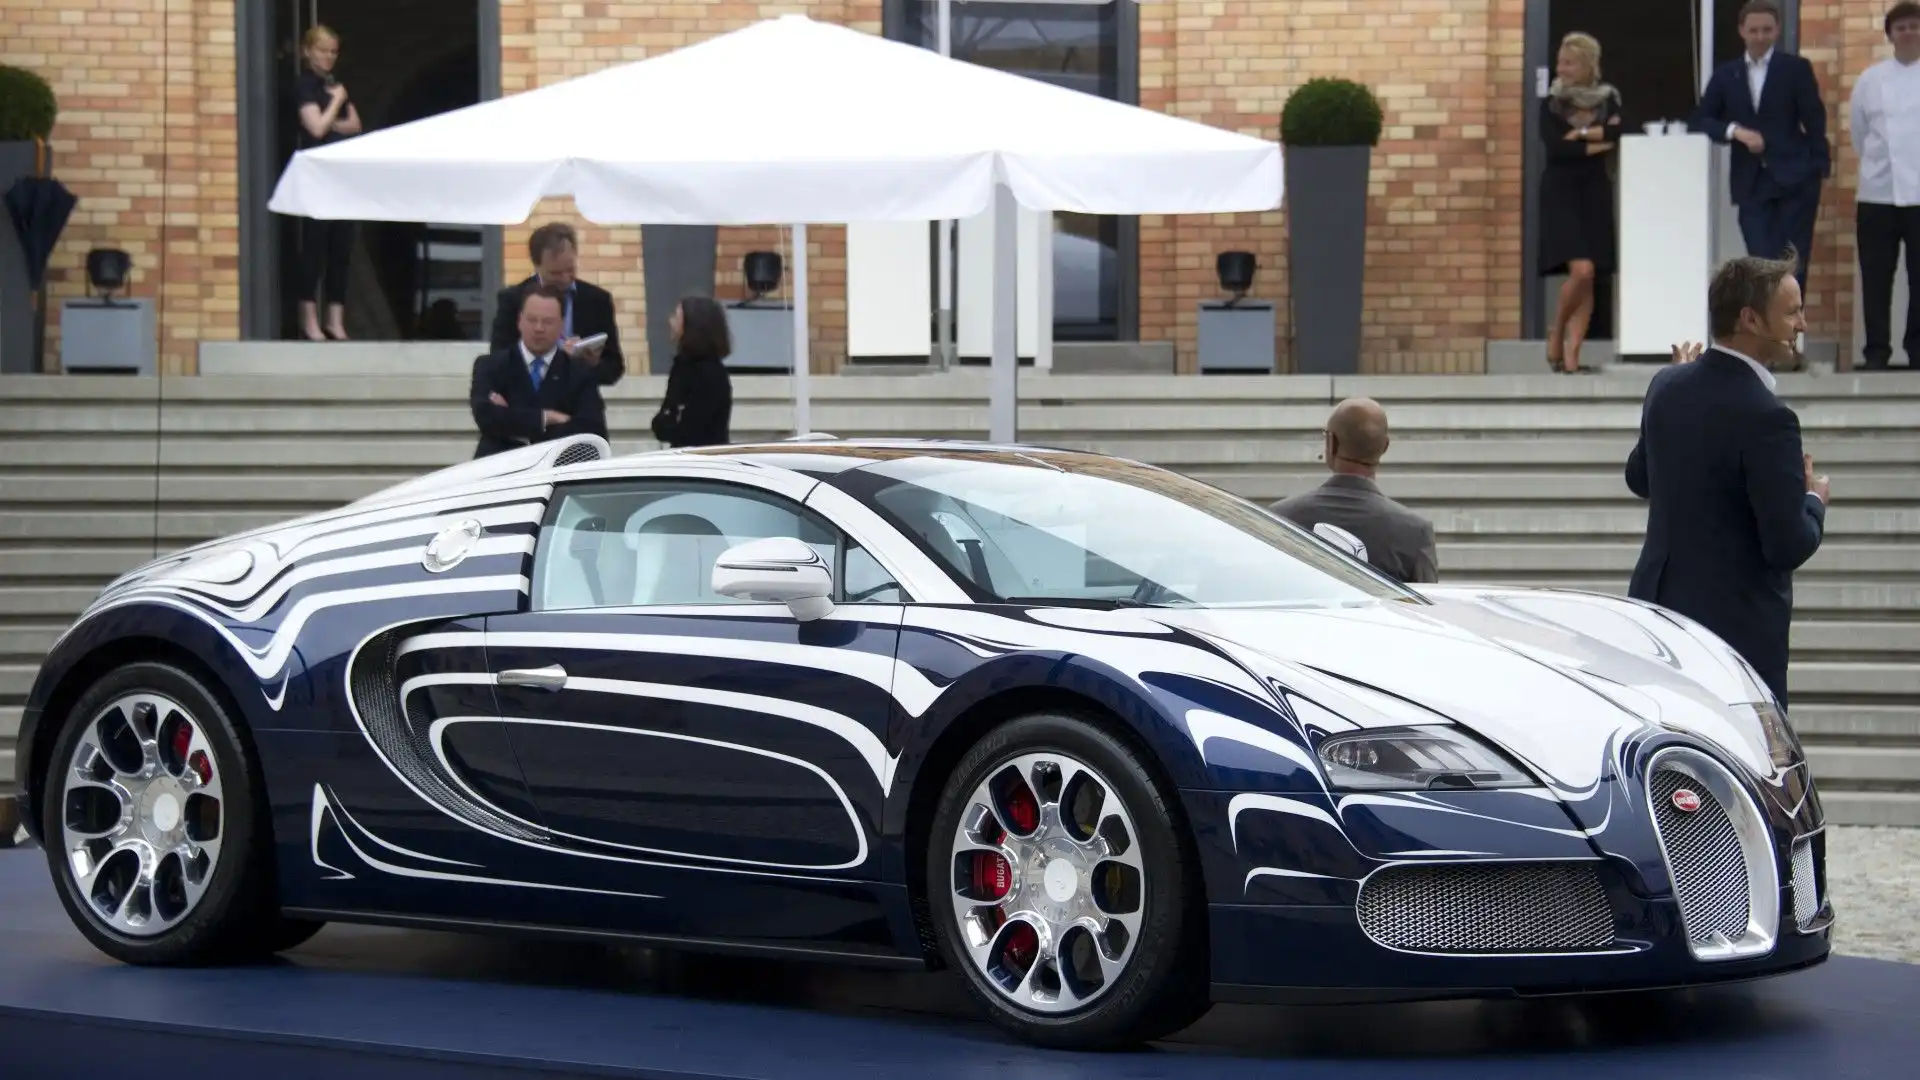 La Bugatti Veyron rimane una delle supercar più iconiche e desiderate di tutti i tempi